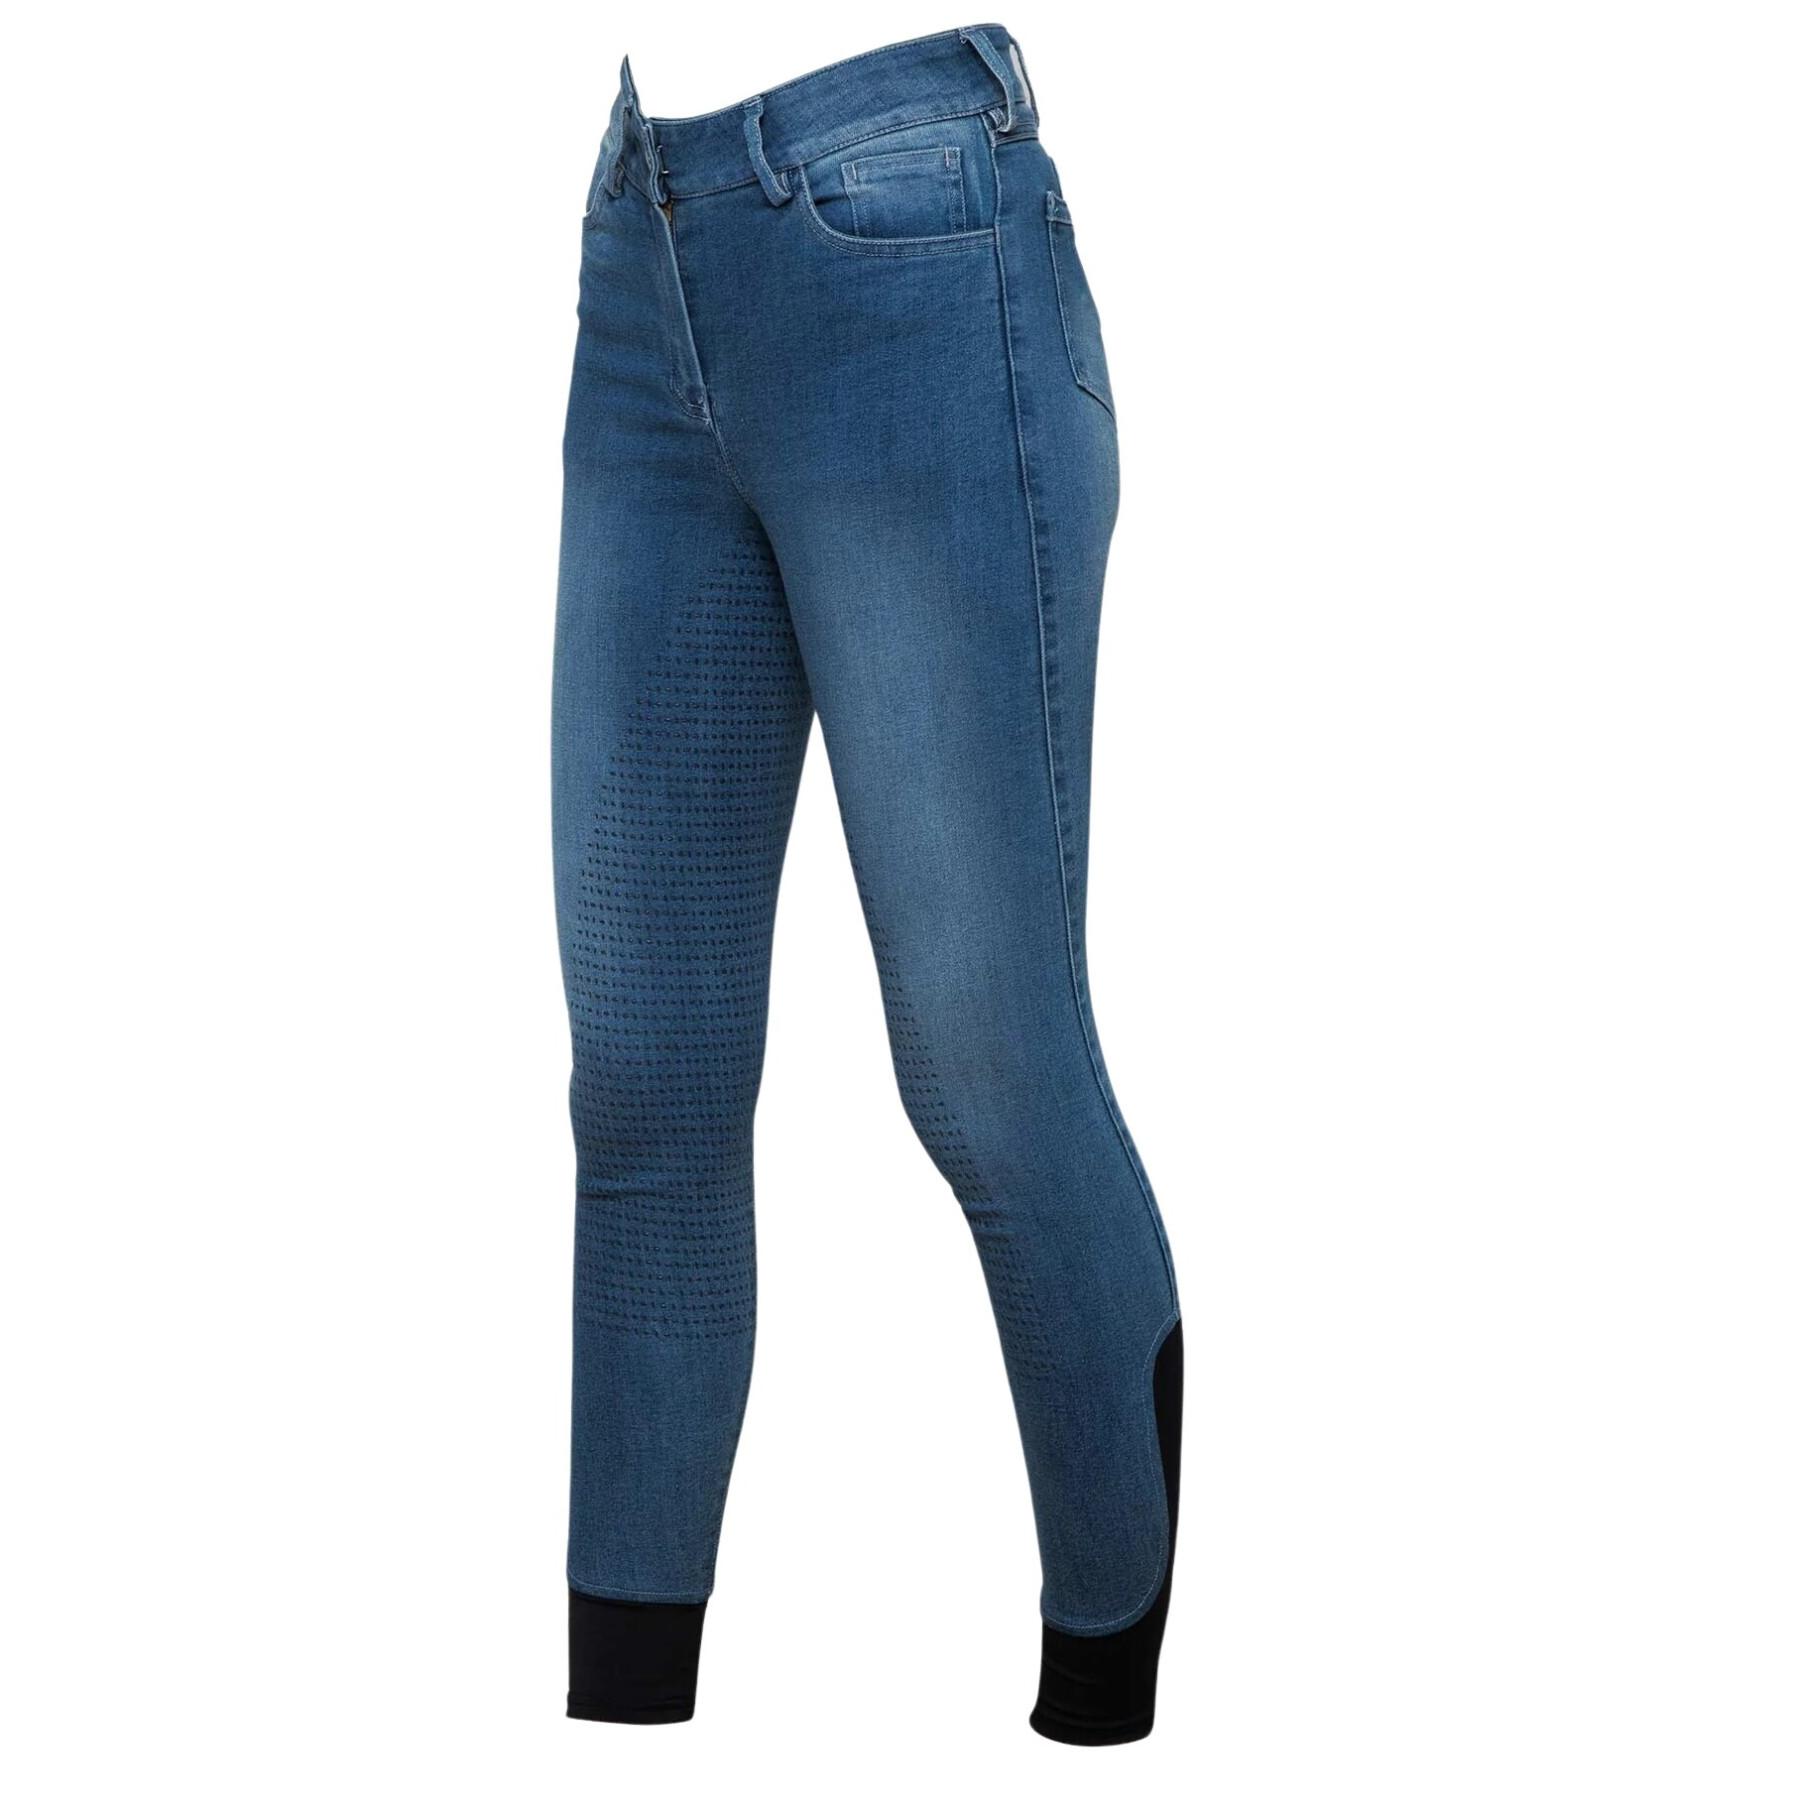 Jeans fato de montar de corpo inteiro para mulheres Premier Equine Gina